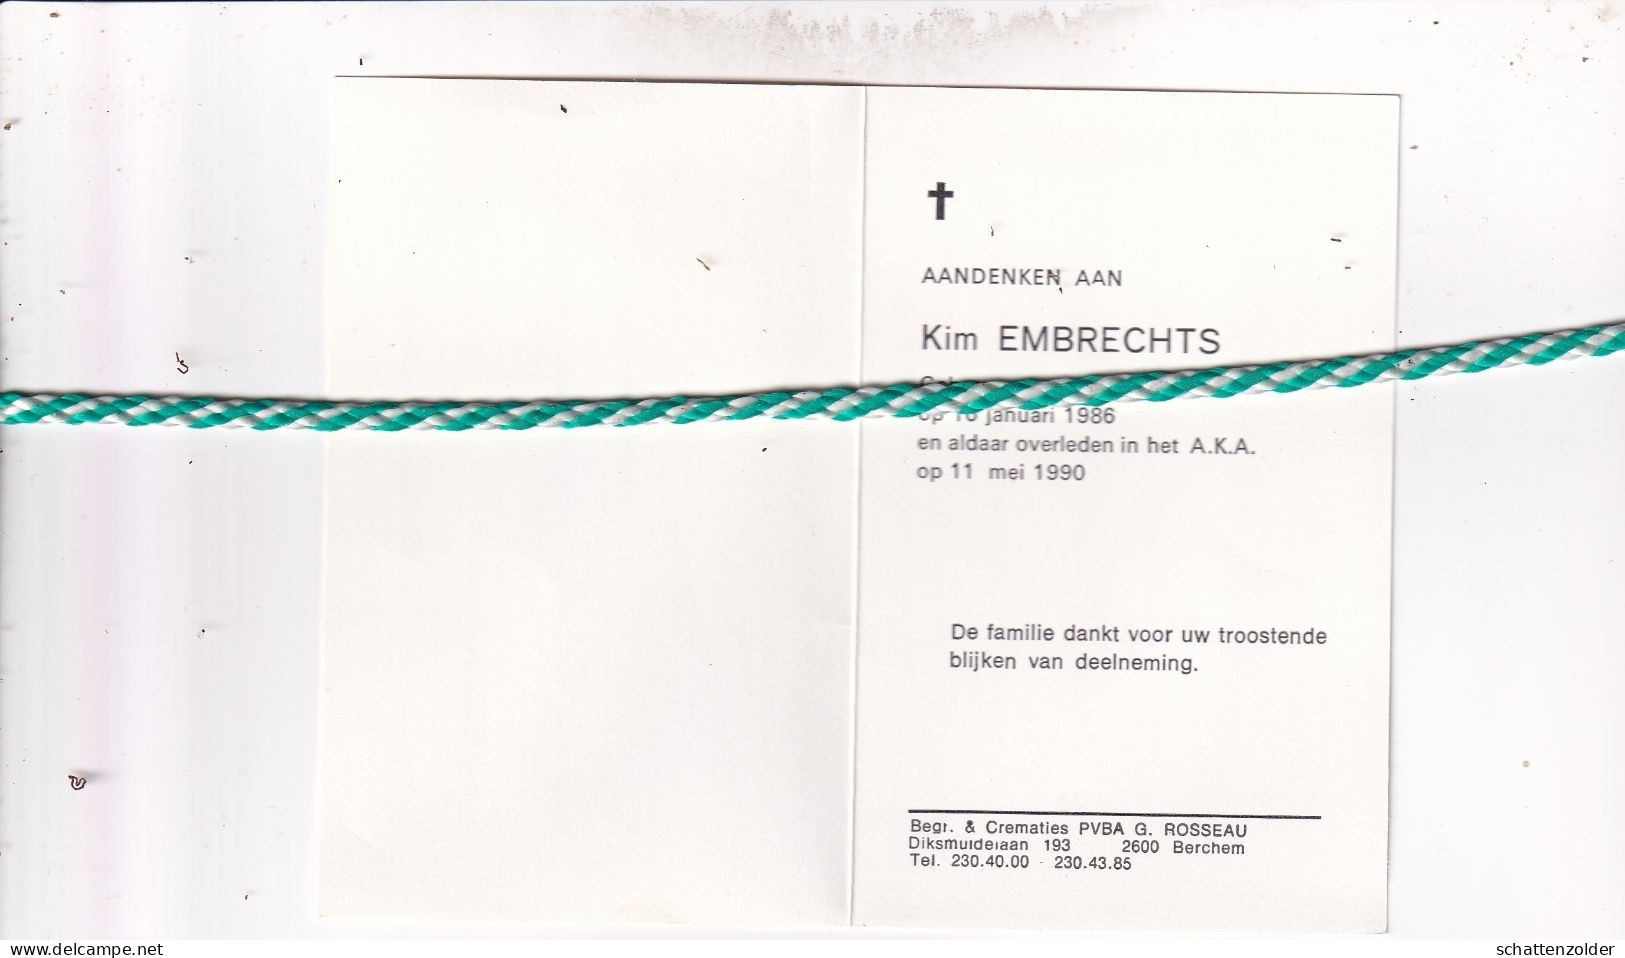 Kim Embrechts, Antwerpen 1986, 1990 - Décès